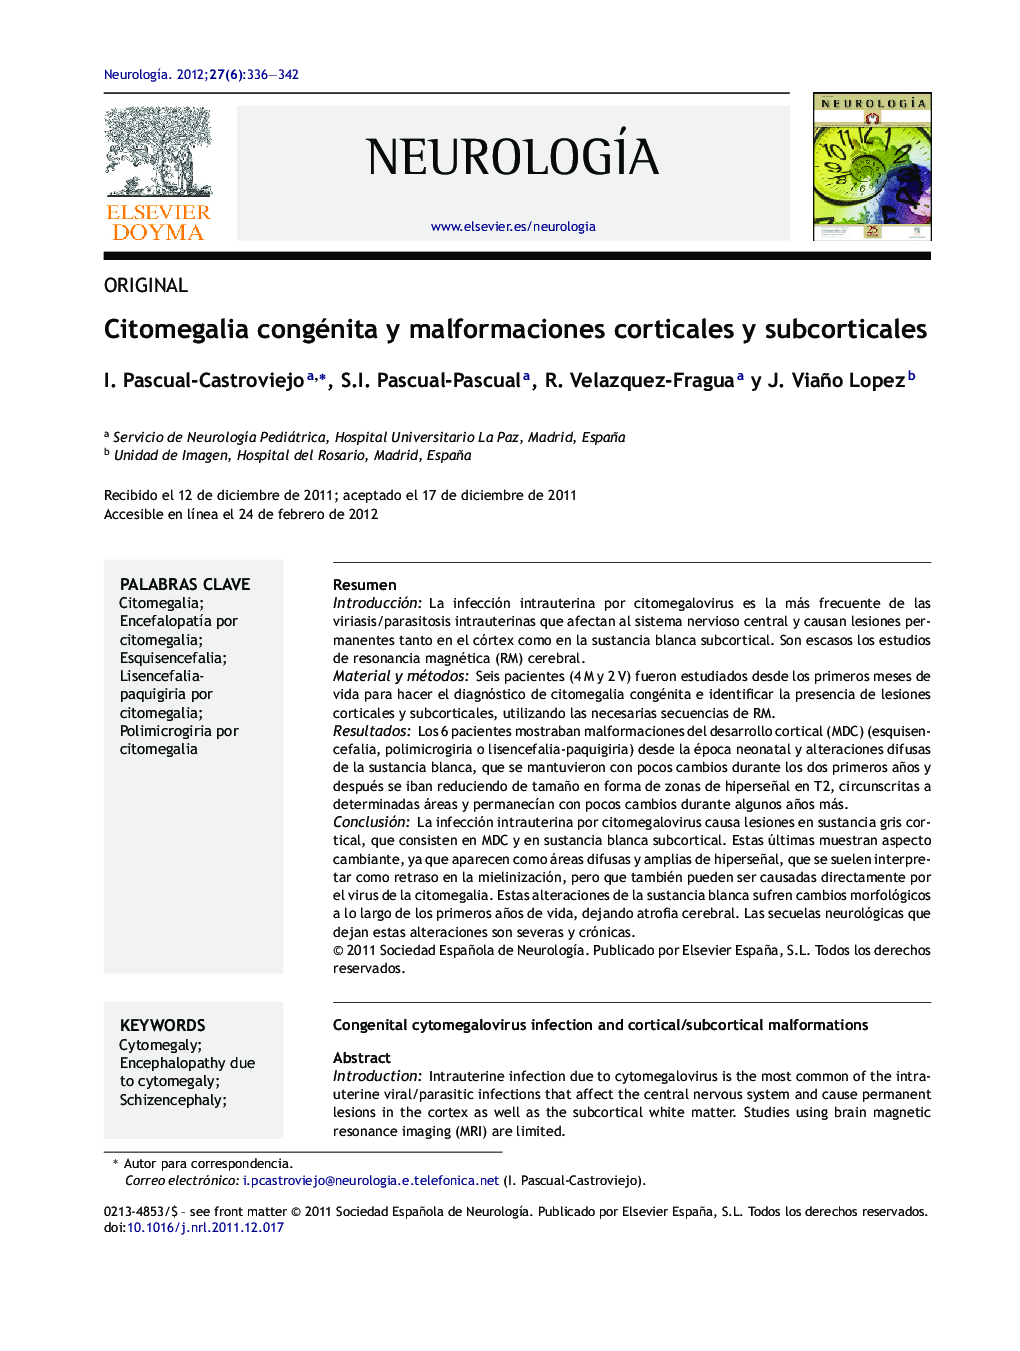 Citomegalia congénita y malformaciones corticales y subcorticales